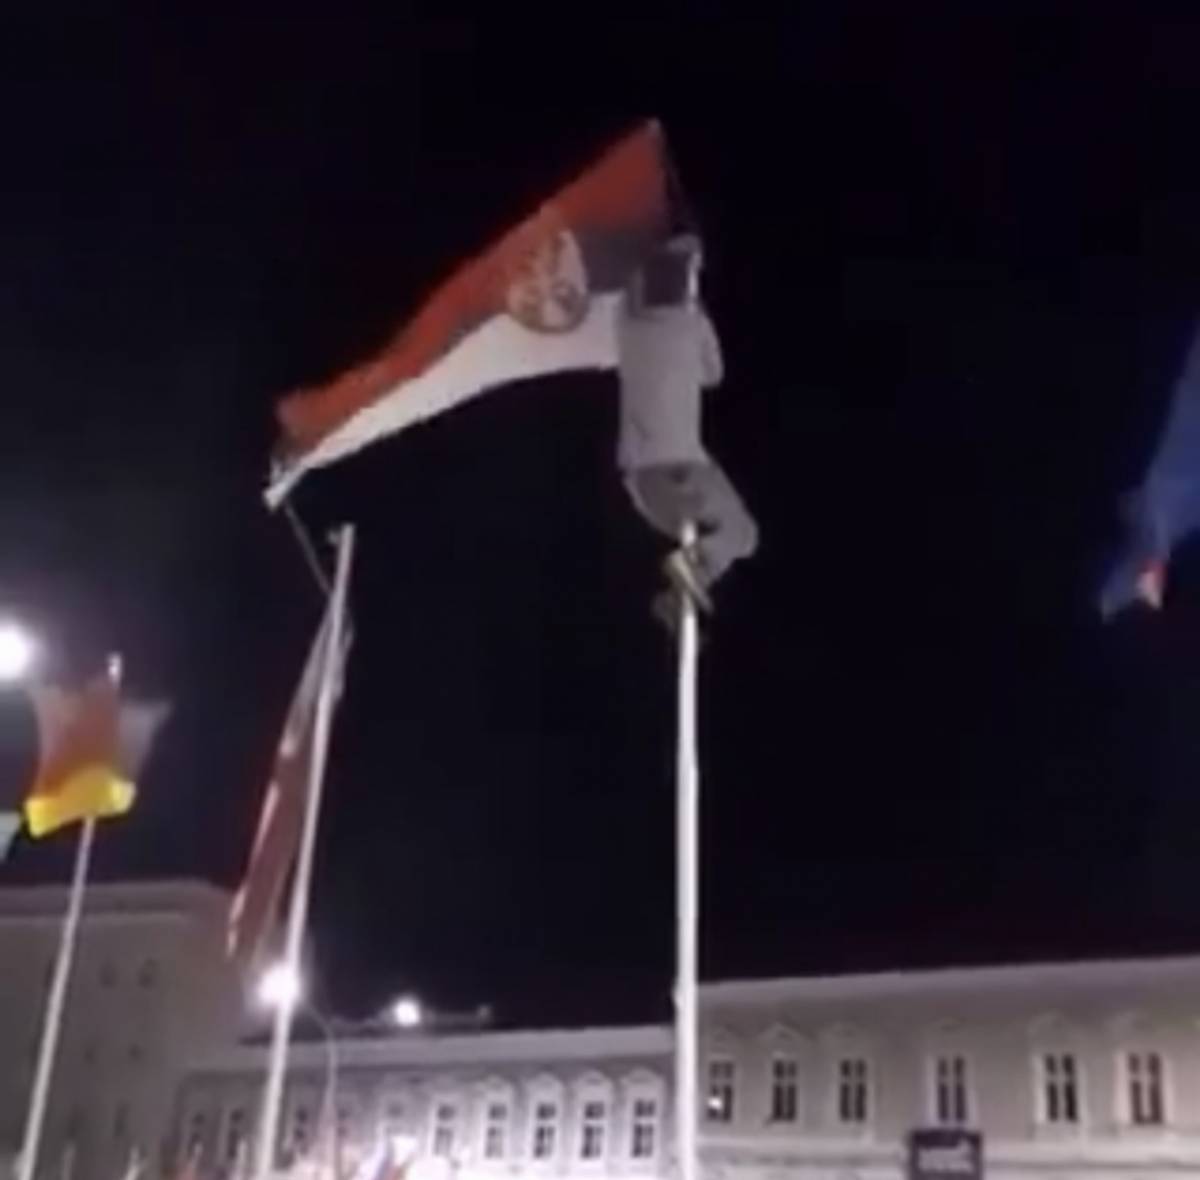 Zbog skidanja zastave Republike Srbije policija ispitala dvojicu mladića iz Pleternice